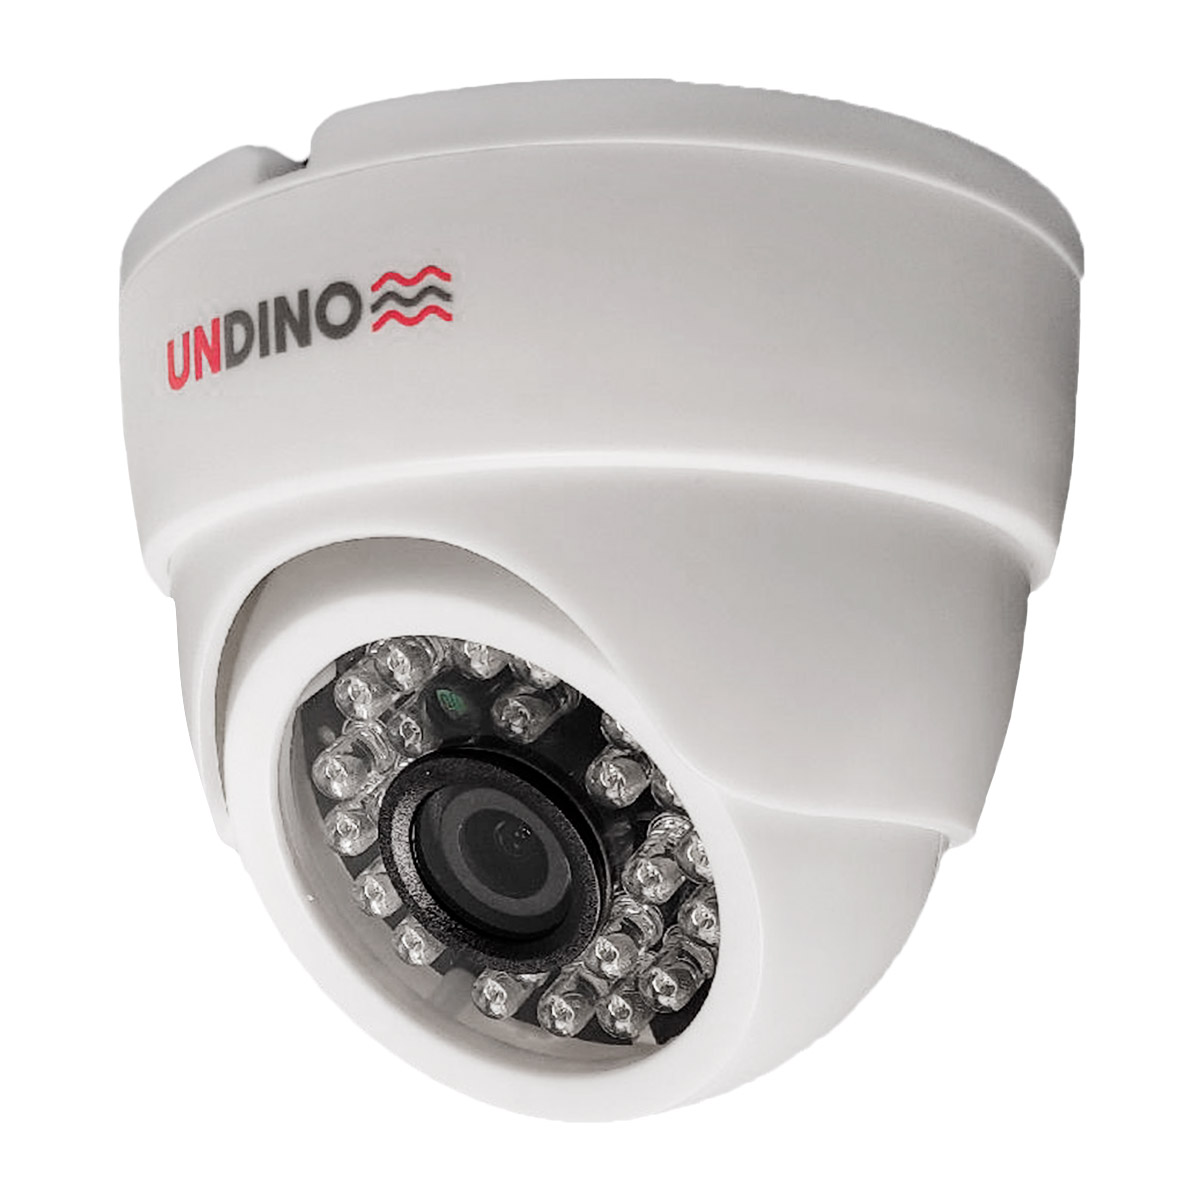 Купольная камера видеонаблюдения IP 5Мп Undino UD-ED05IP цифровая с POE питанием ная купольная ip сетевая камера с ик подсветкой mt dw1080ip20vsg poe audio 2 7 13 5mm